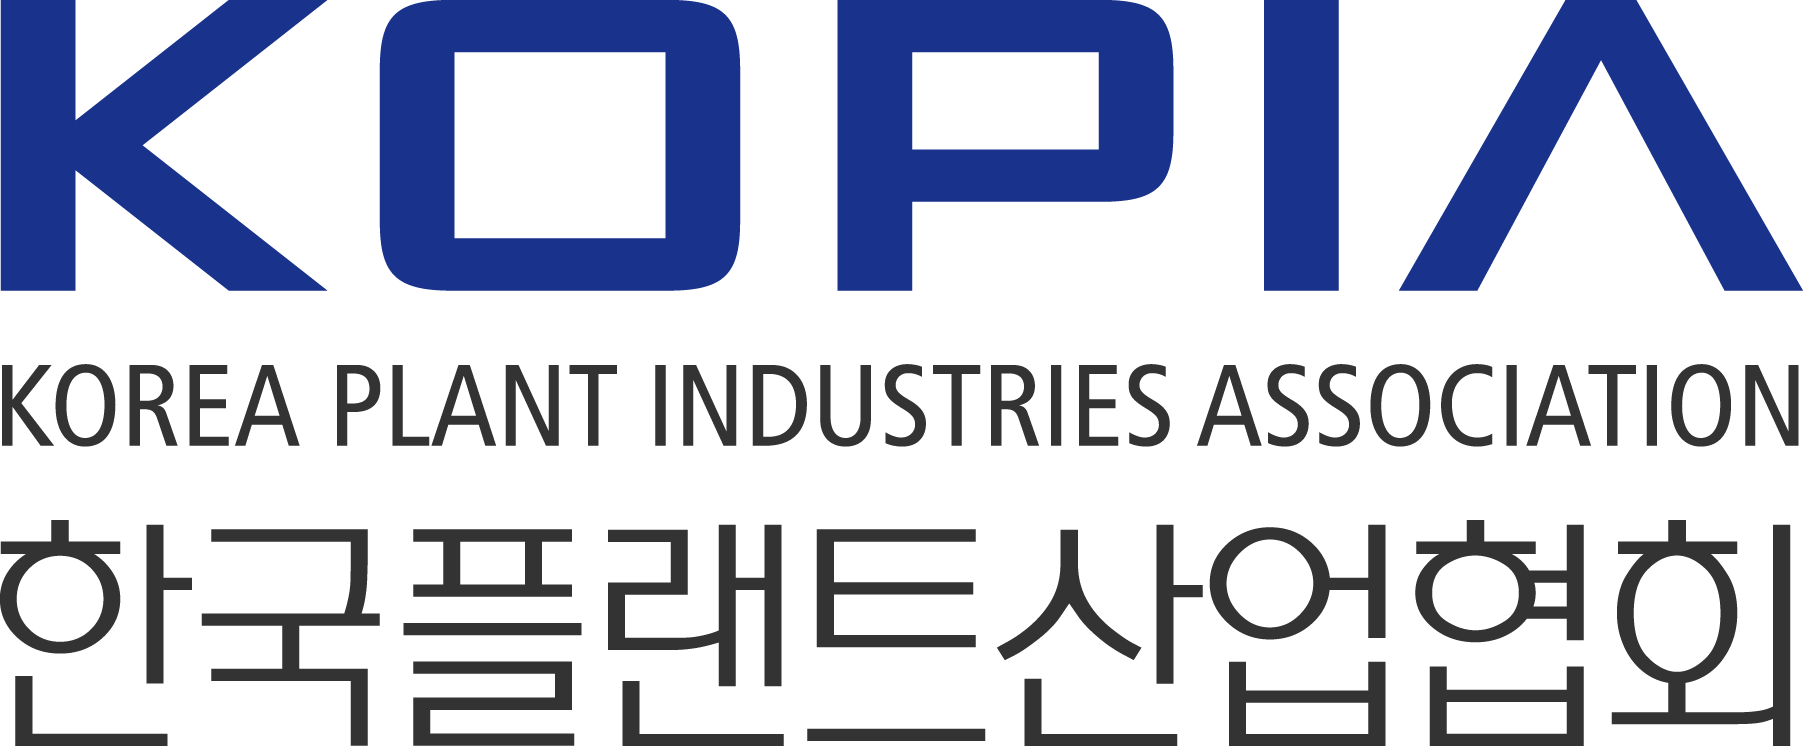 (사)한국플랜트산업협회의 기업로고